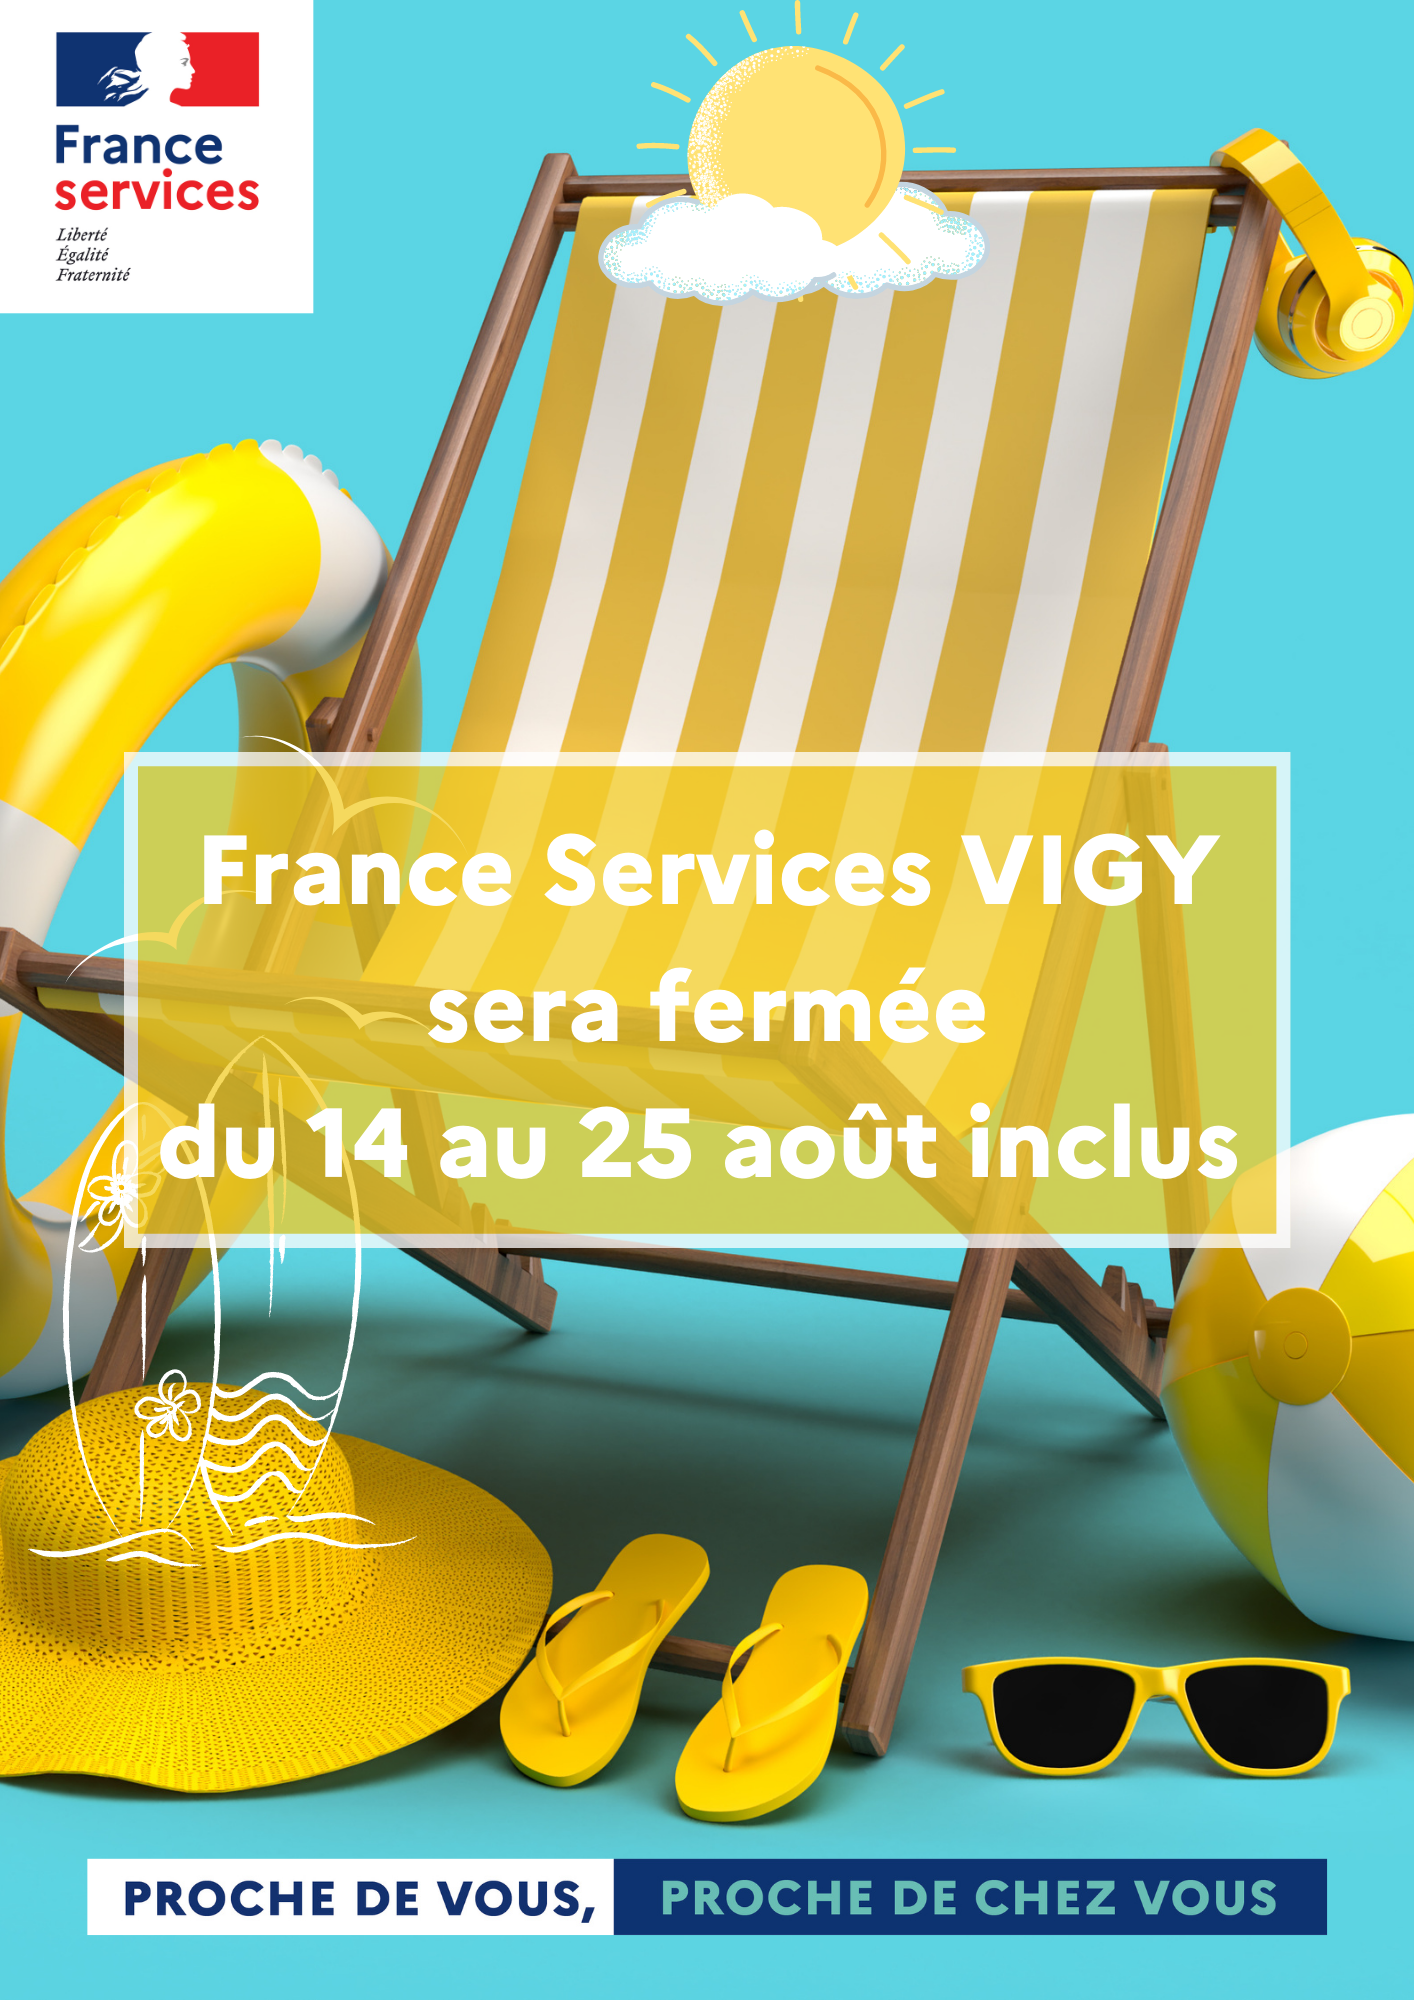 Fermeture estivale France Services